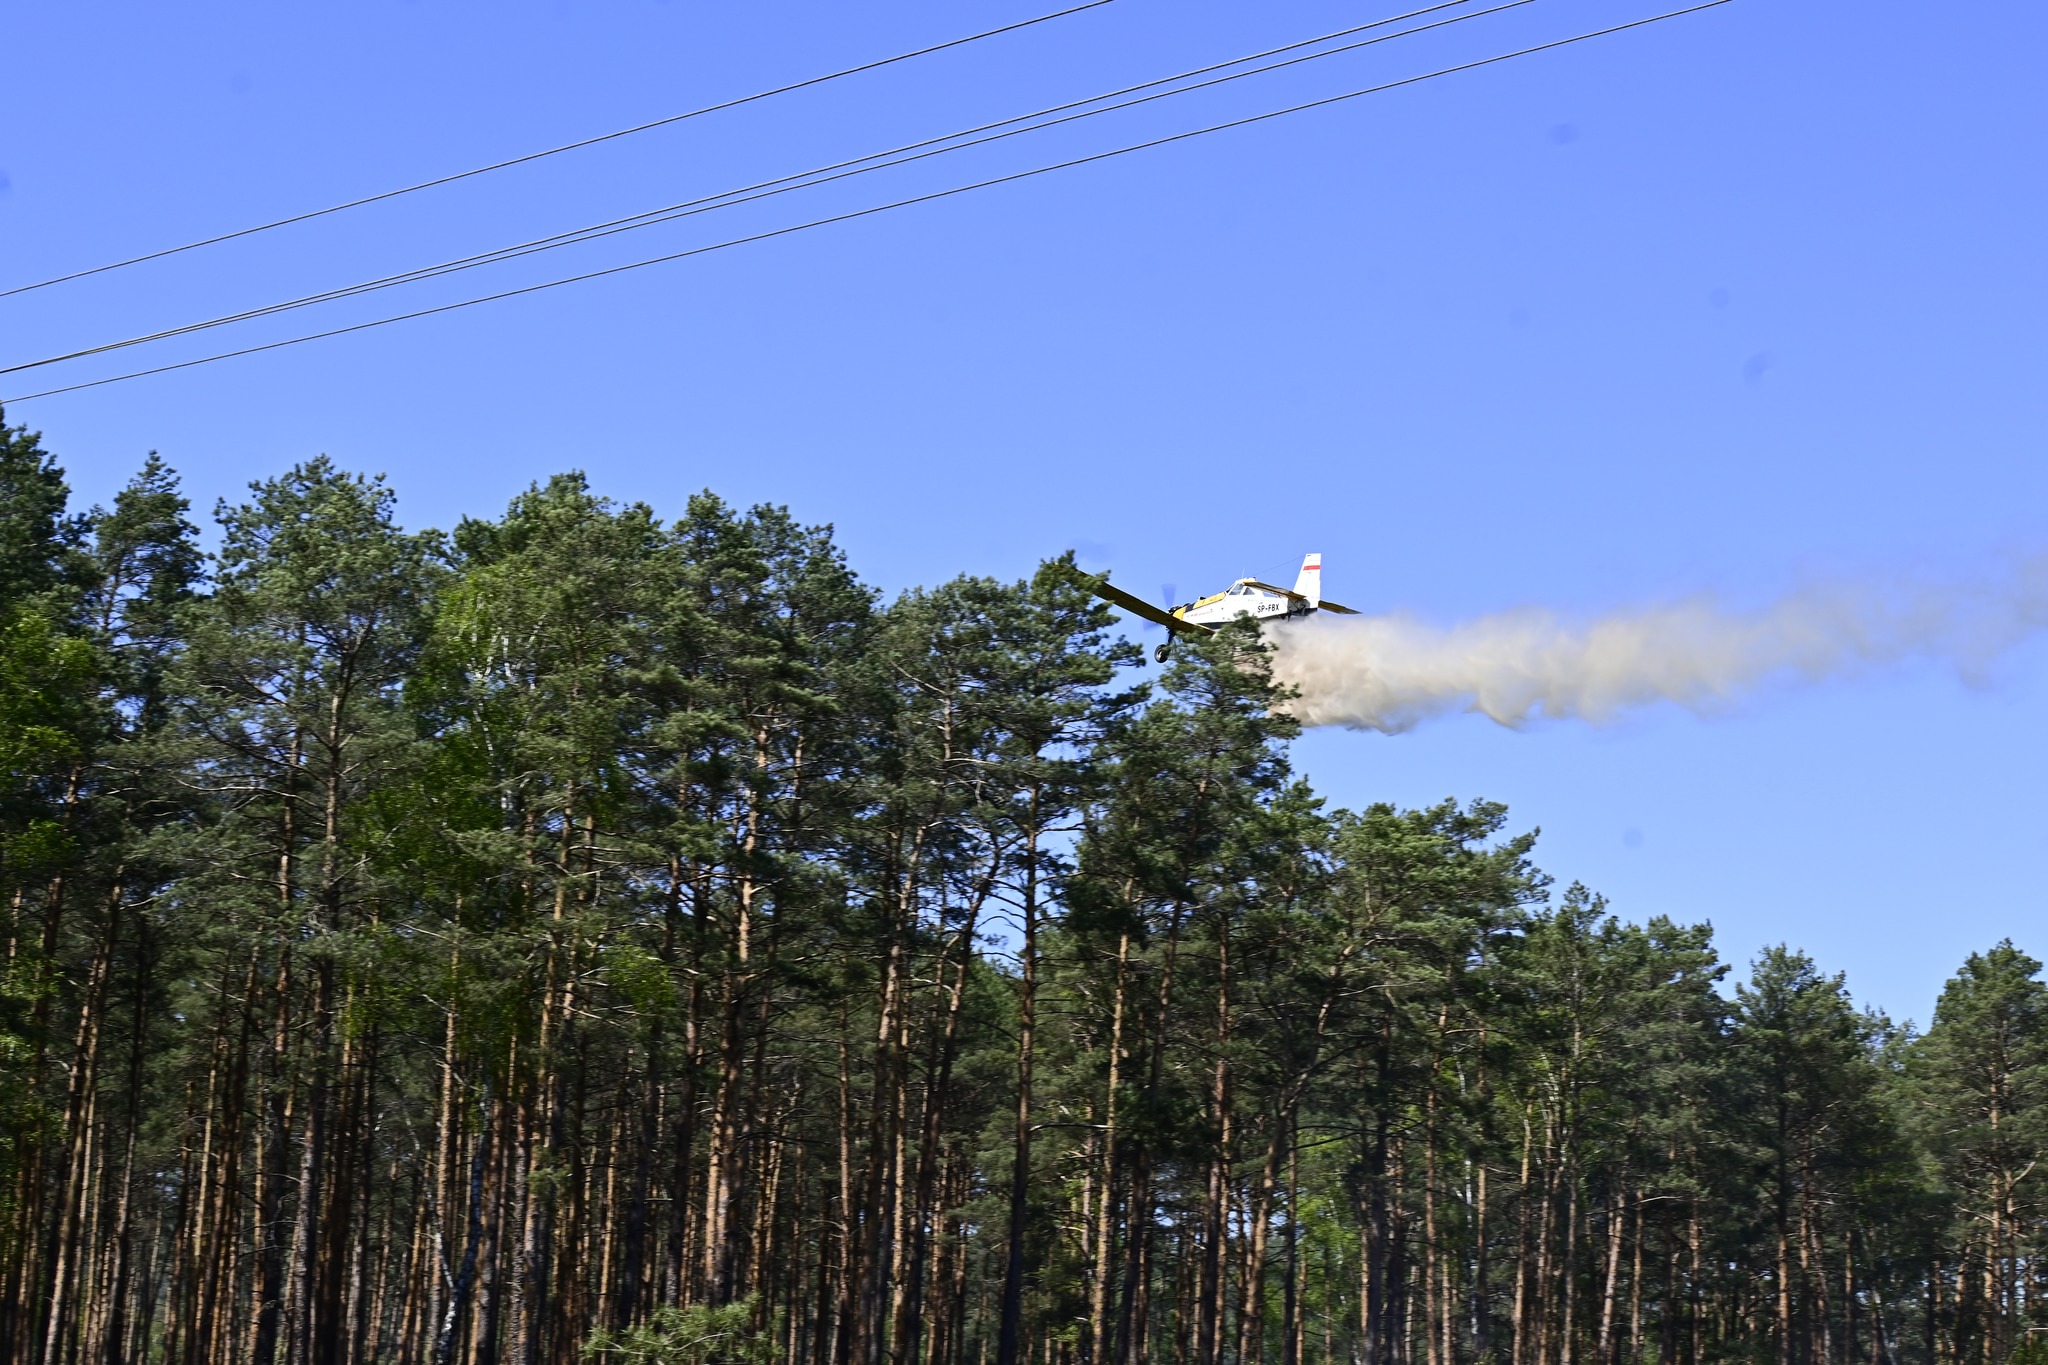 Zdjęcie przedstawia zrzut wody nad lasem, dokonywany przez samolot gaśniczy M-18 Dromader.